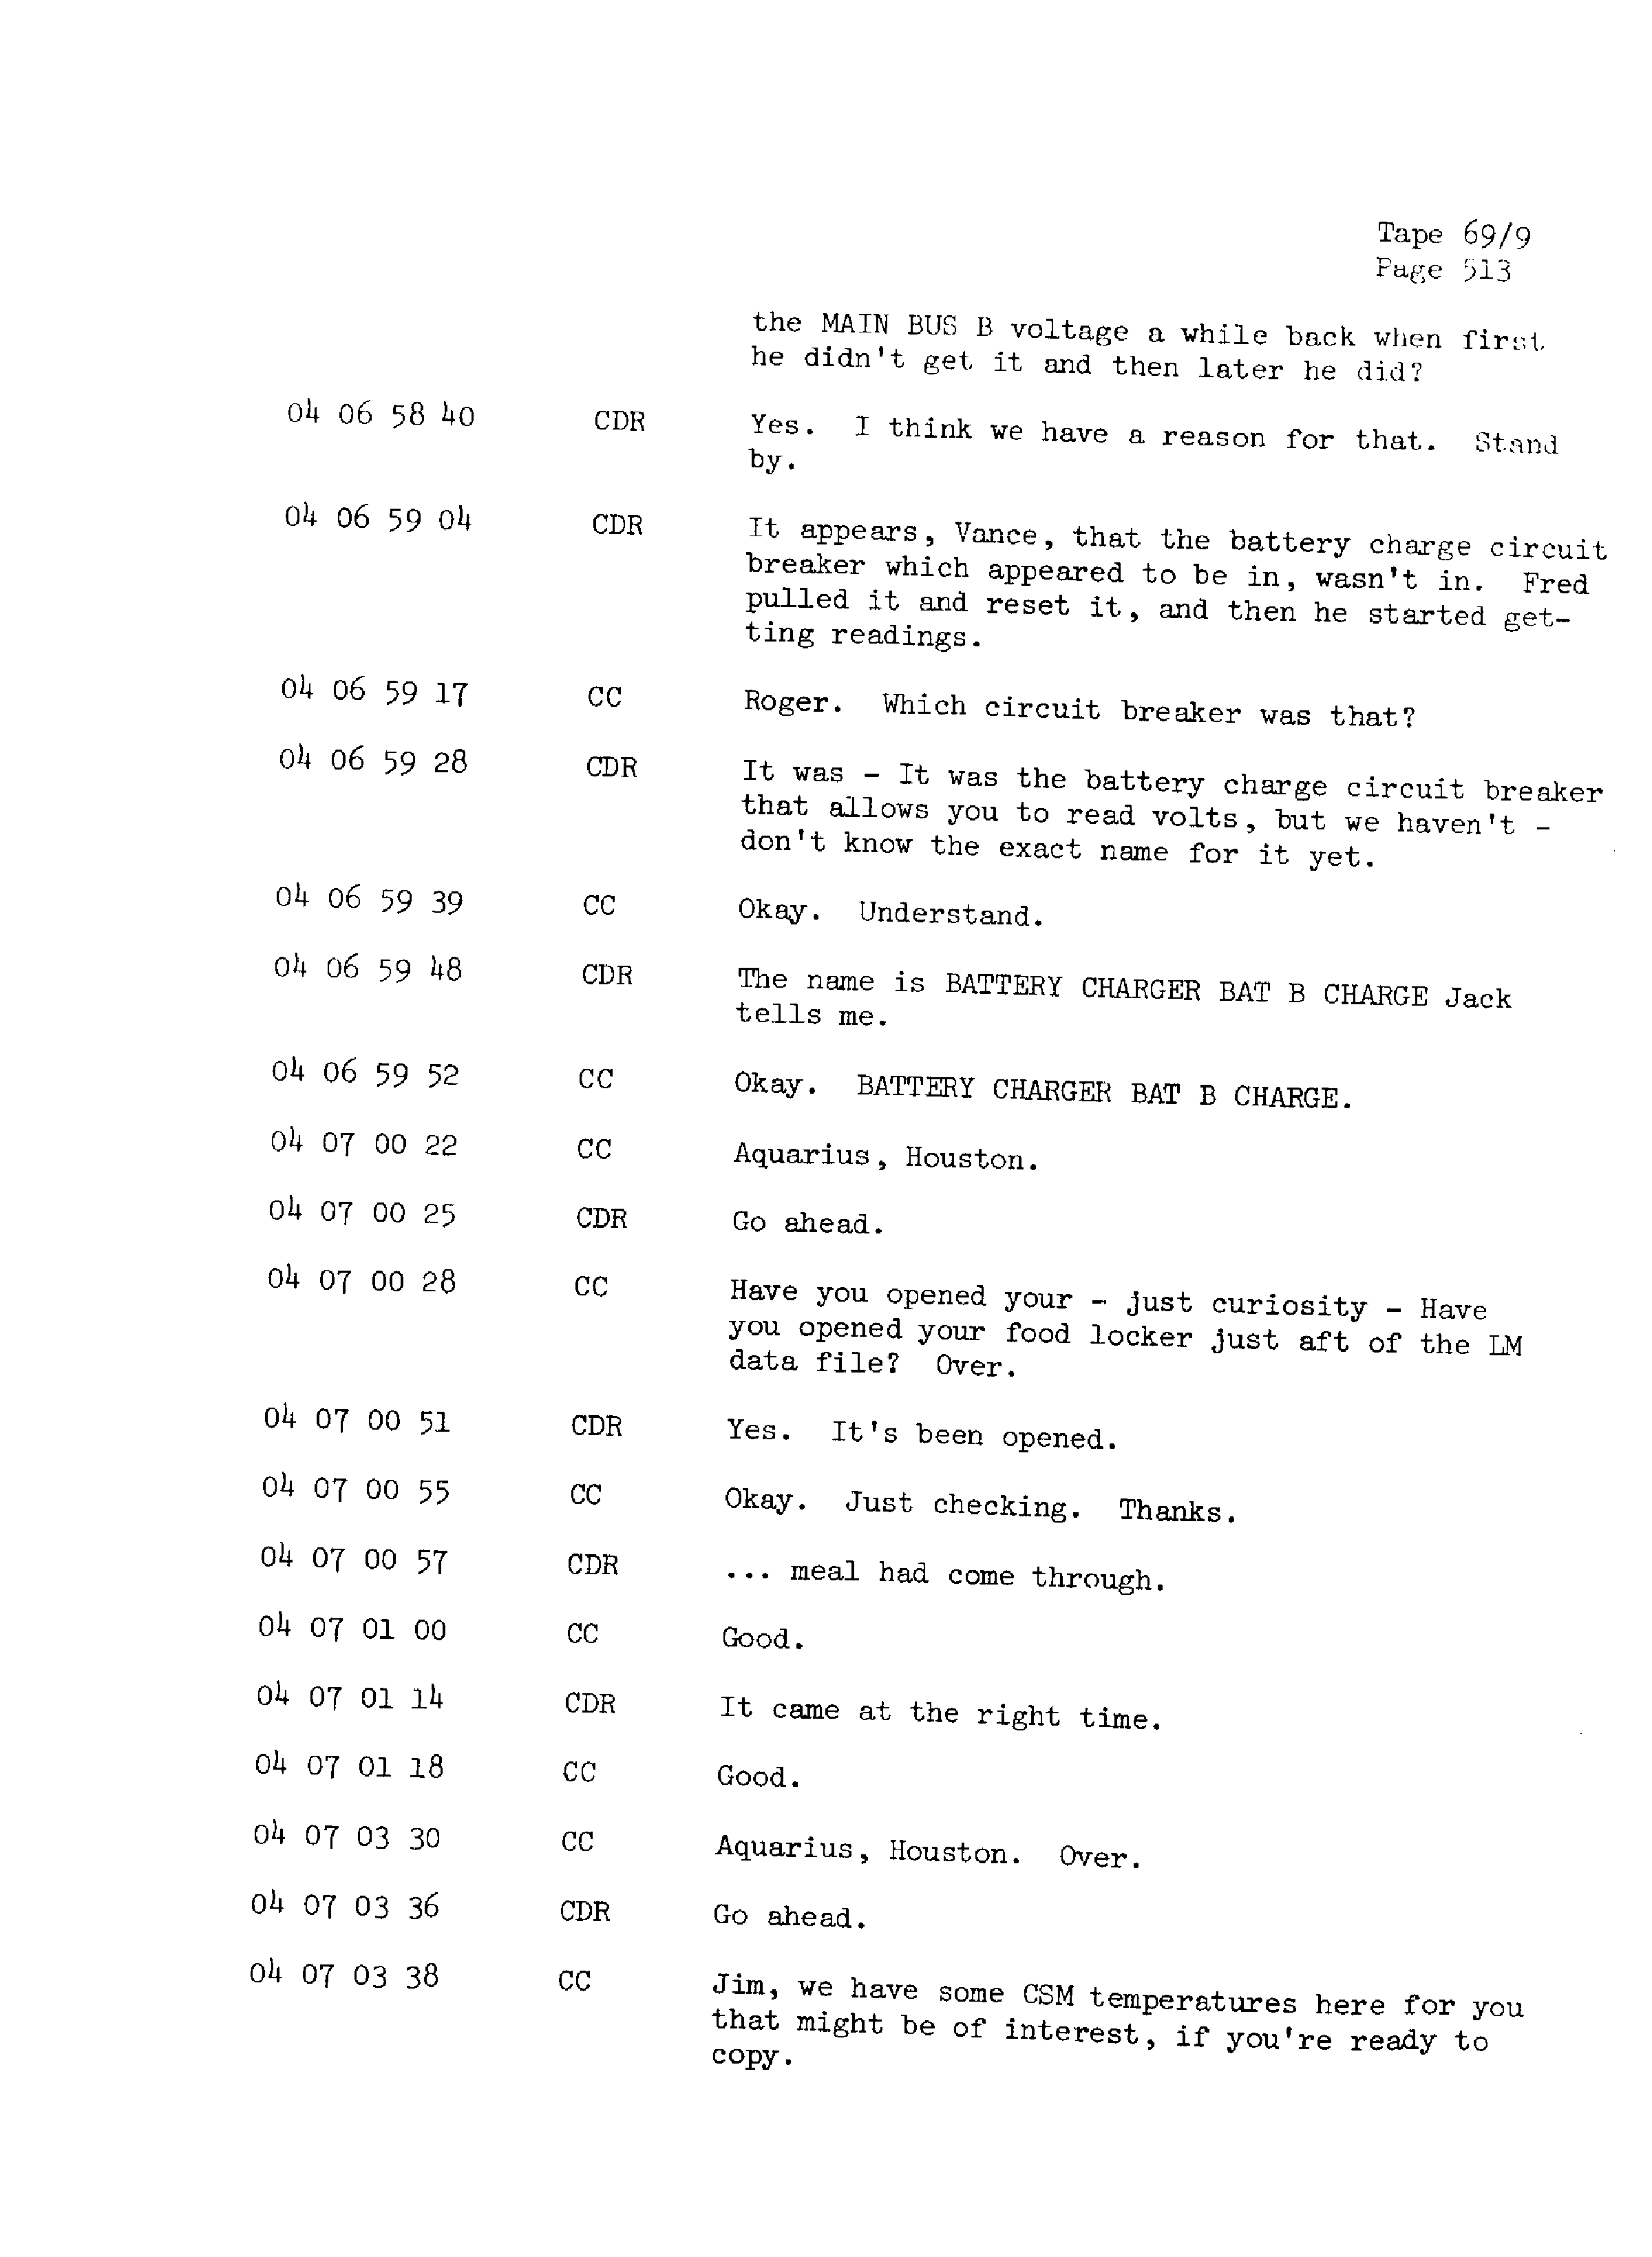 Page 520 of Apollo 13’s original transcript